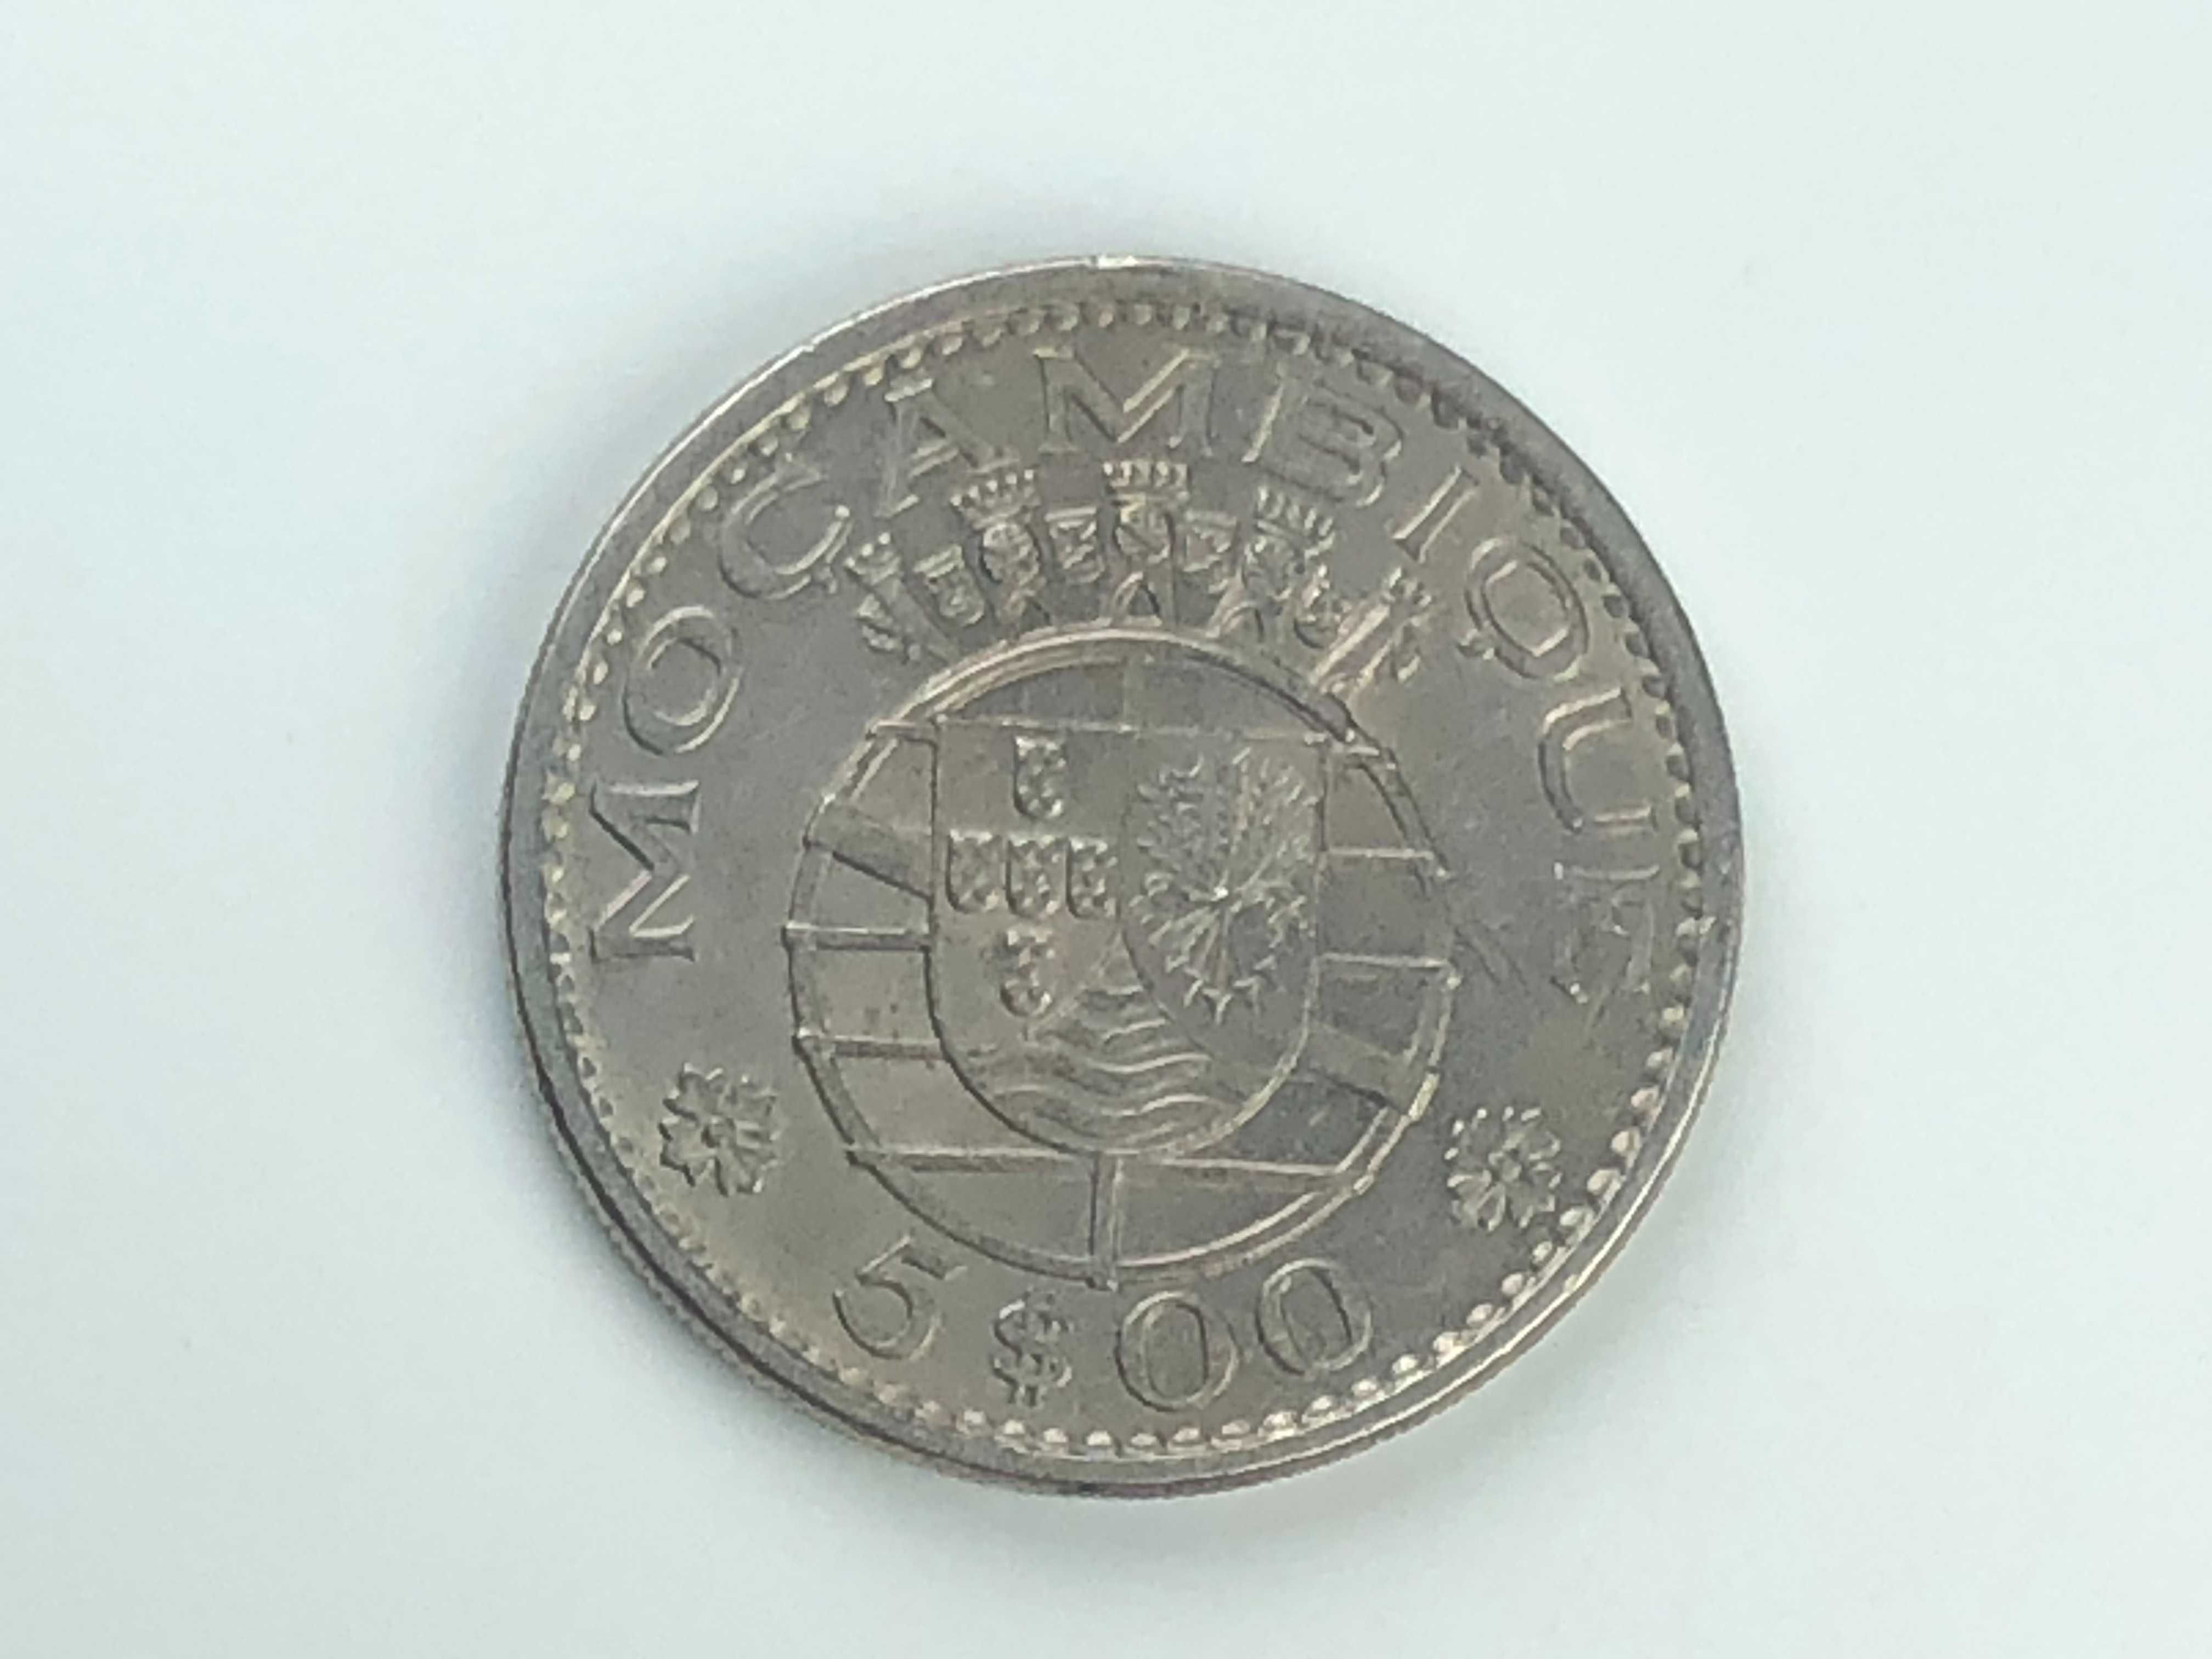 Lote de 2 moedas de Moçambique 5 Escudos em Niquel 1971 e 1973